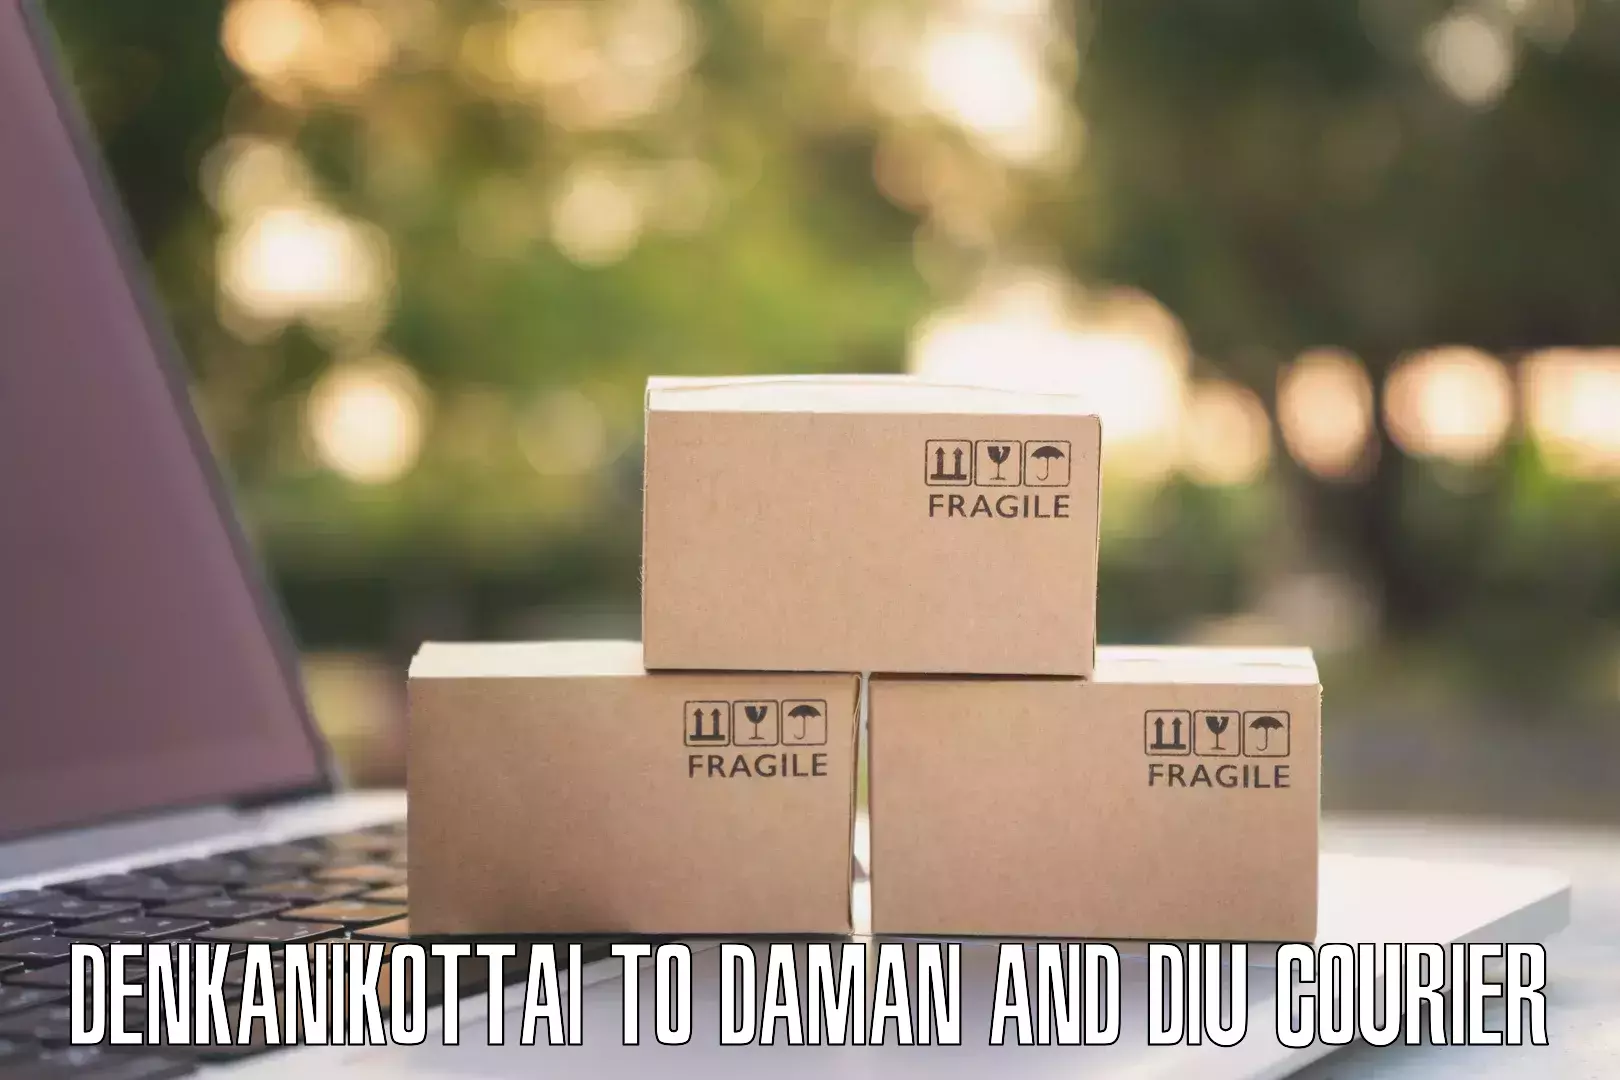 High-capacity parcel service Denkanikottai to Daman